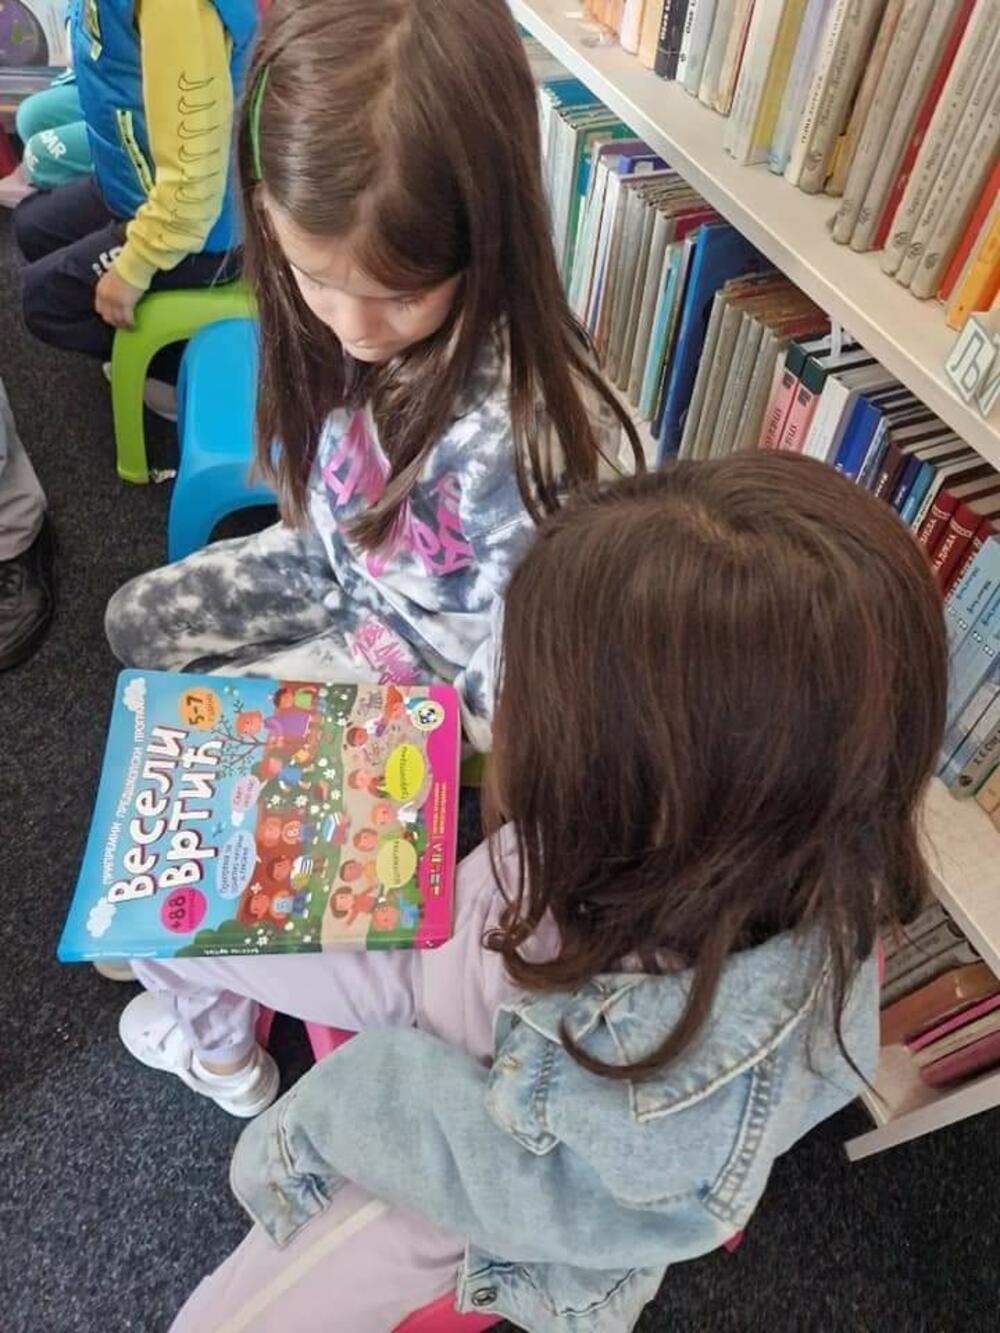 <p>“Mališanima smo pokazali kakve ih sve čitalačke radosti očekuju u prostoriji Dječjeg odjeljenja Narodne biblioteke", kazali su iz biblioteke</p>